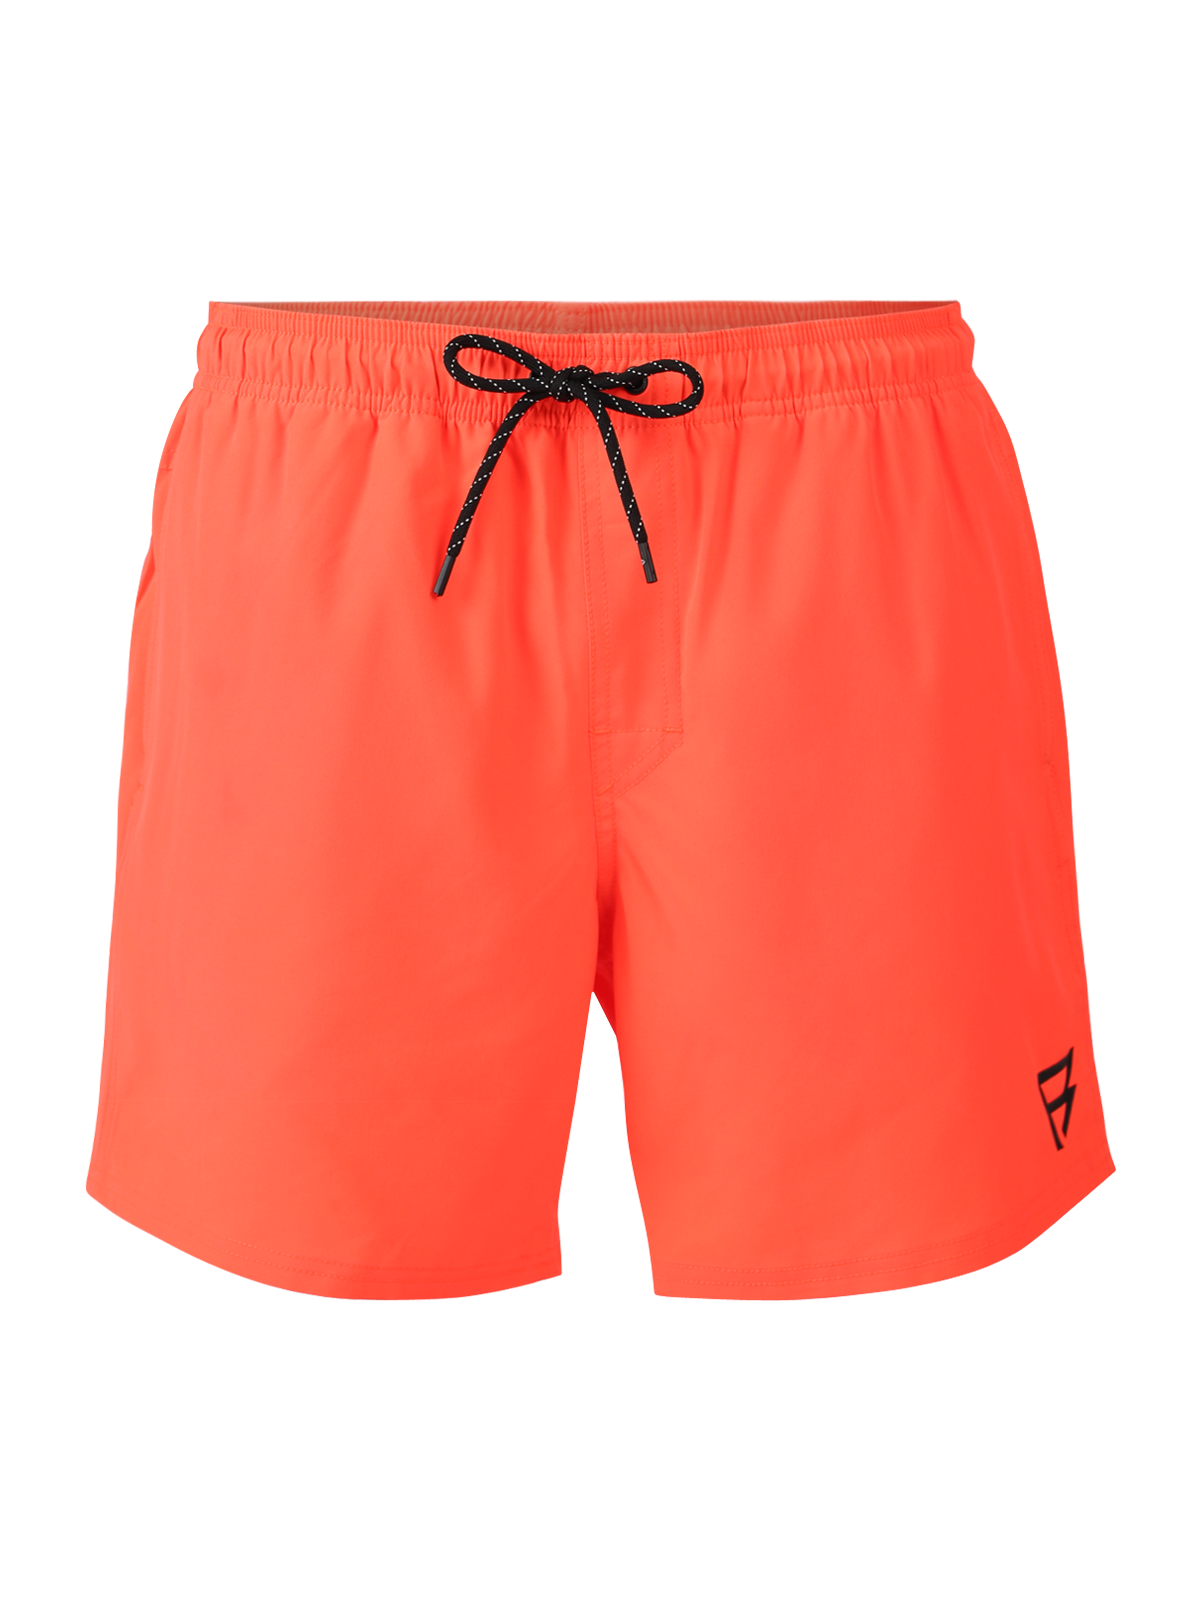 Bru-conic Men Swim Shorts | Neon Orange